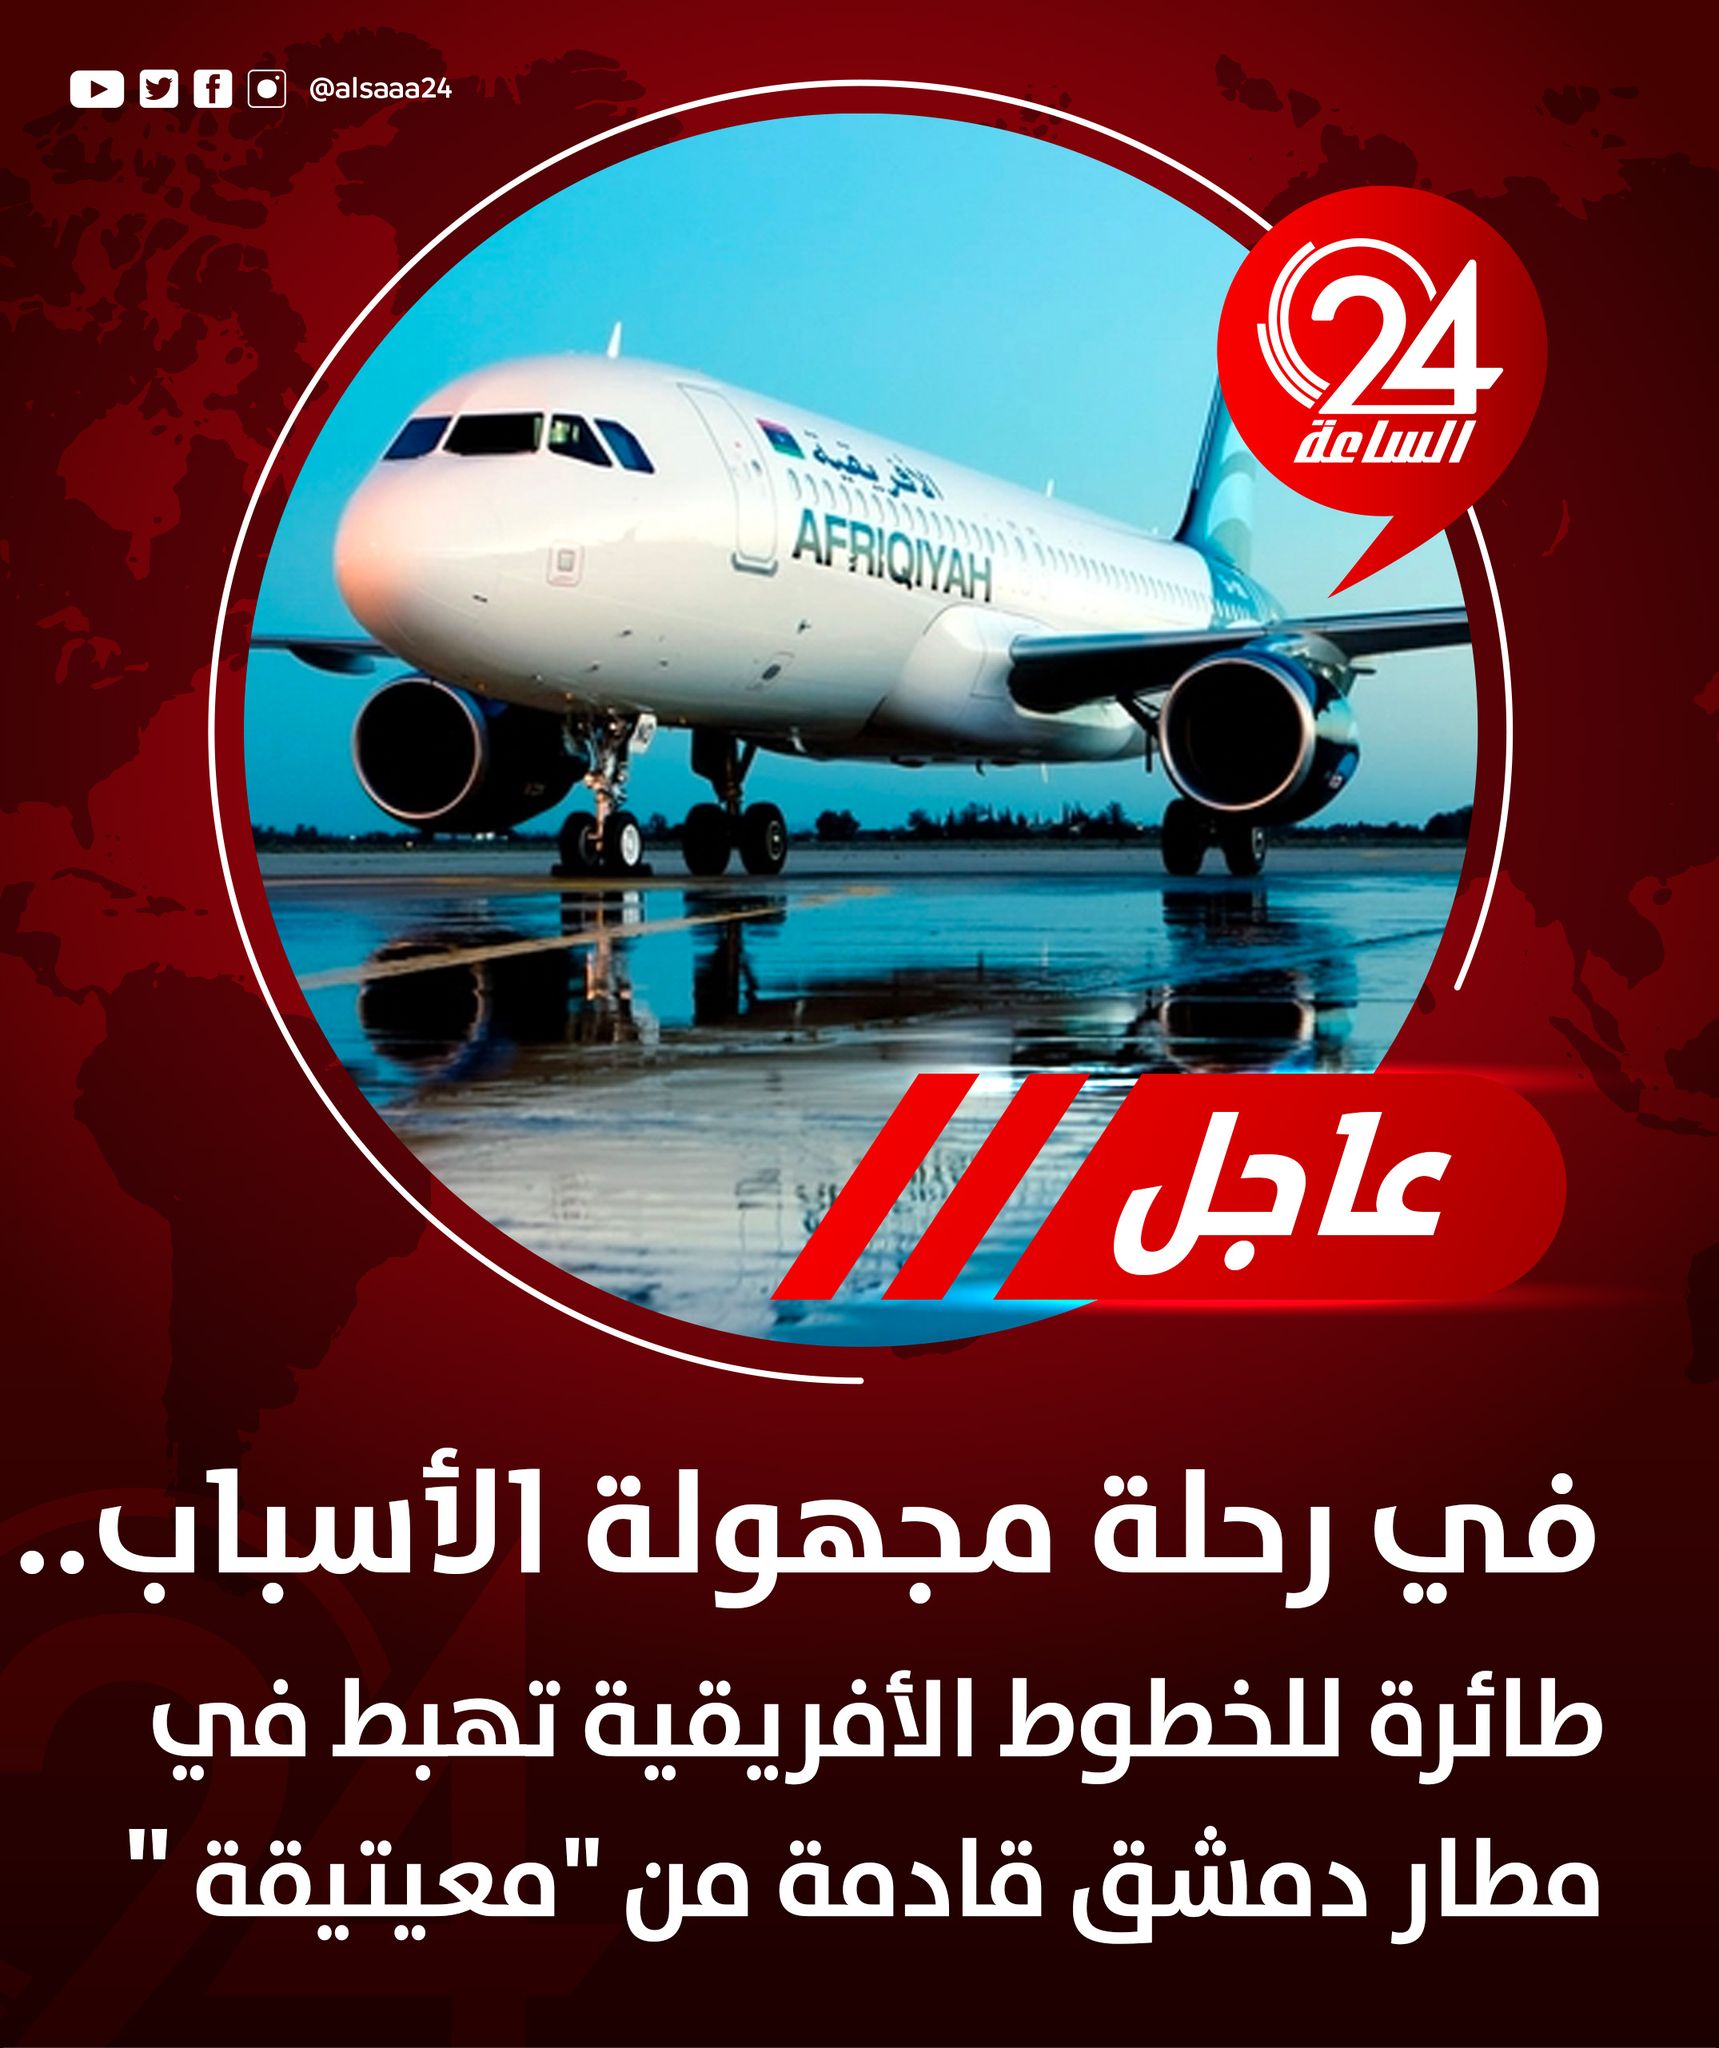 الساعة 24 | #عاجل | هبوط طائرة تابعة للخطوط الأفريقية في مطار دمشق الدولي  لأول مرة منذُ 11 سنة والقادمة من مطار معيتيقة بطرابلس في رحلة مجهولة  الأسباب حتى الآن. #الساعة24 #ليبيا